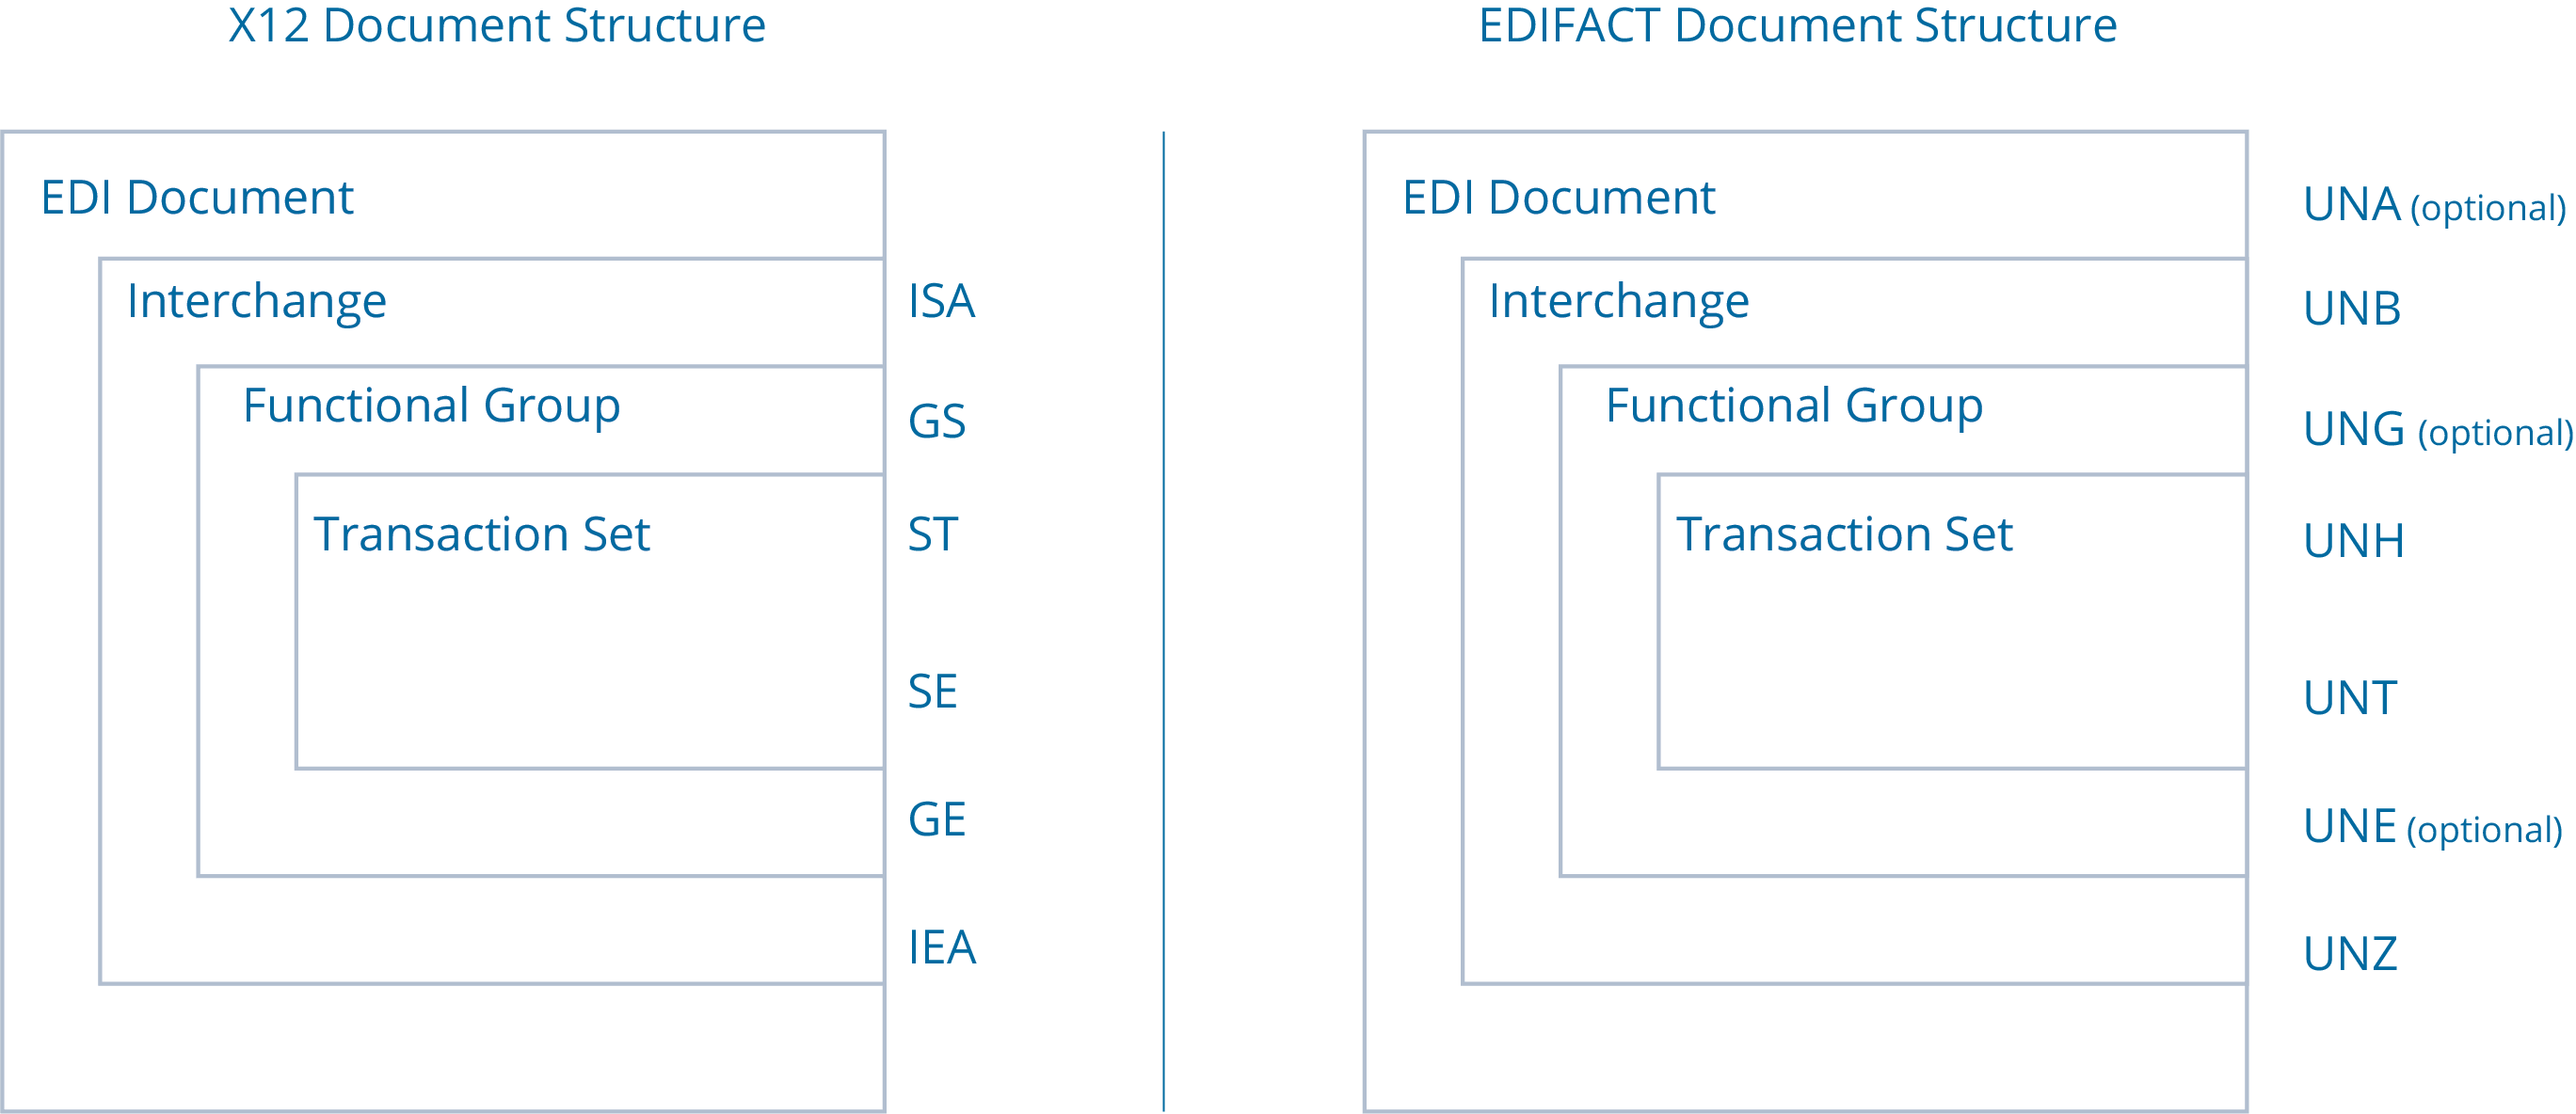 X12 vs. EDIFACT Document Format